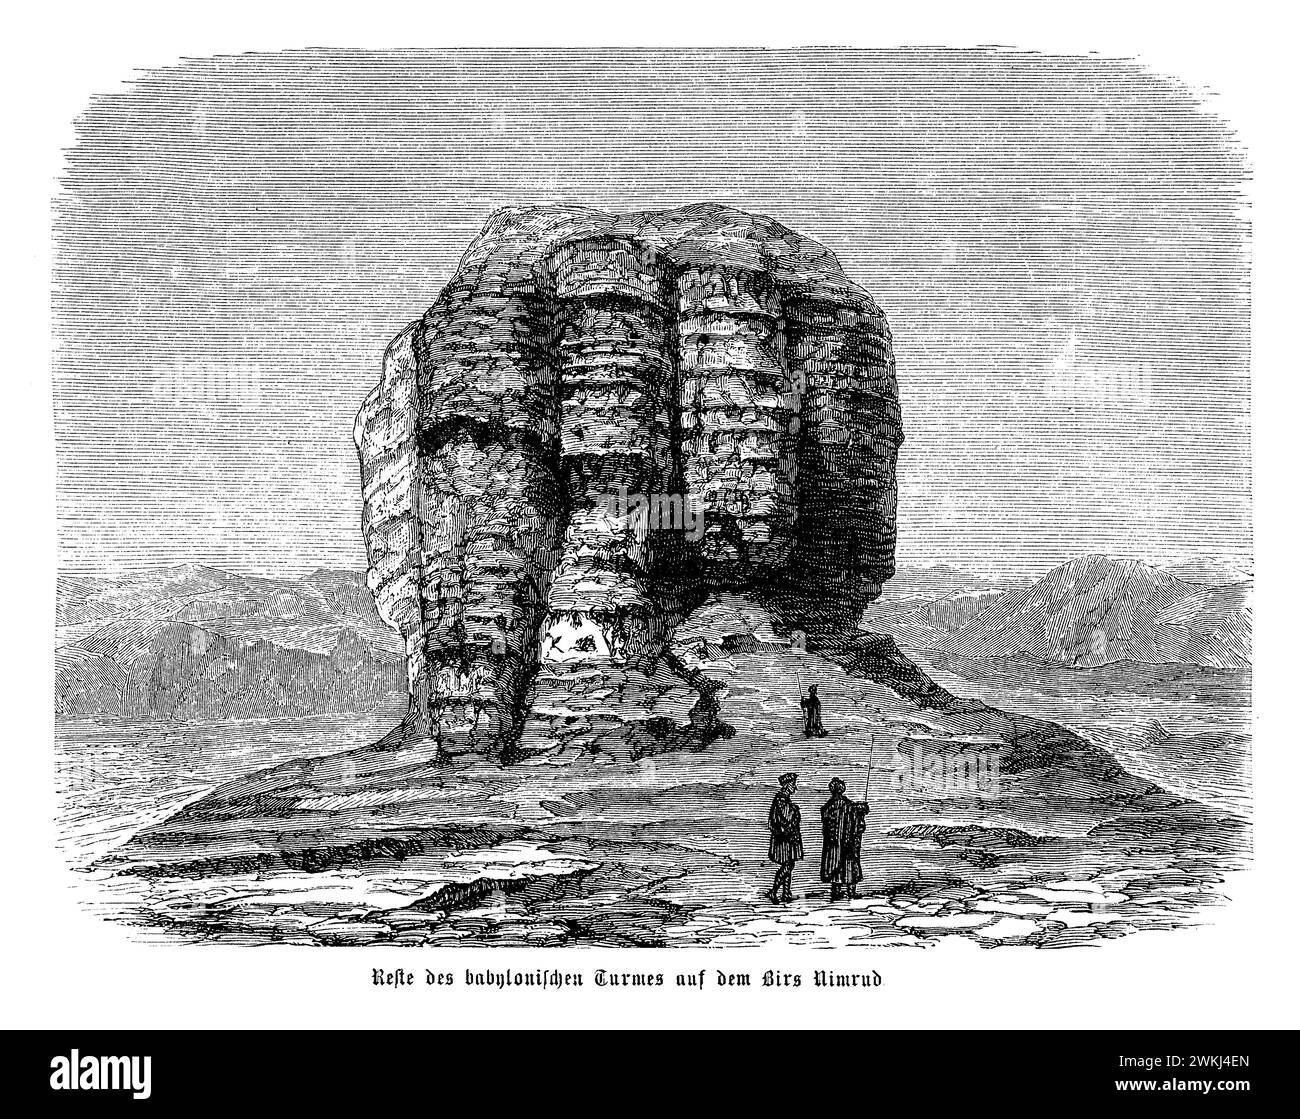 Die Überreste des Babylonischen Turms in Birs Nimrud sind ein ergreifendes Zeugnis des architektonischen Ambientes der antiken mesopotamischen Zivilisation und der dauerhaften Legende des Turms von Babel. Diese Ruinen befinden sich in der Nähe der historischen Stadt Babylon und werden von einigen als Stätte des biblischen Turms von Babel angesehen, ein Symbol menschlicher Sehnsucht und göttlicher Vergeltung. Obwohl heute in erster Linie ein Hügel aus Schutt und Überresten ist, fängt der Ort die Fantasie ein und bietet Einblicke in alte Ingenieurskunst, religiöse Praktiken und mythologische Erzählungen, die die menschliche Kultur geprägt haben Stockfoto